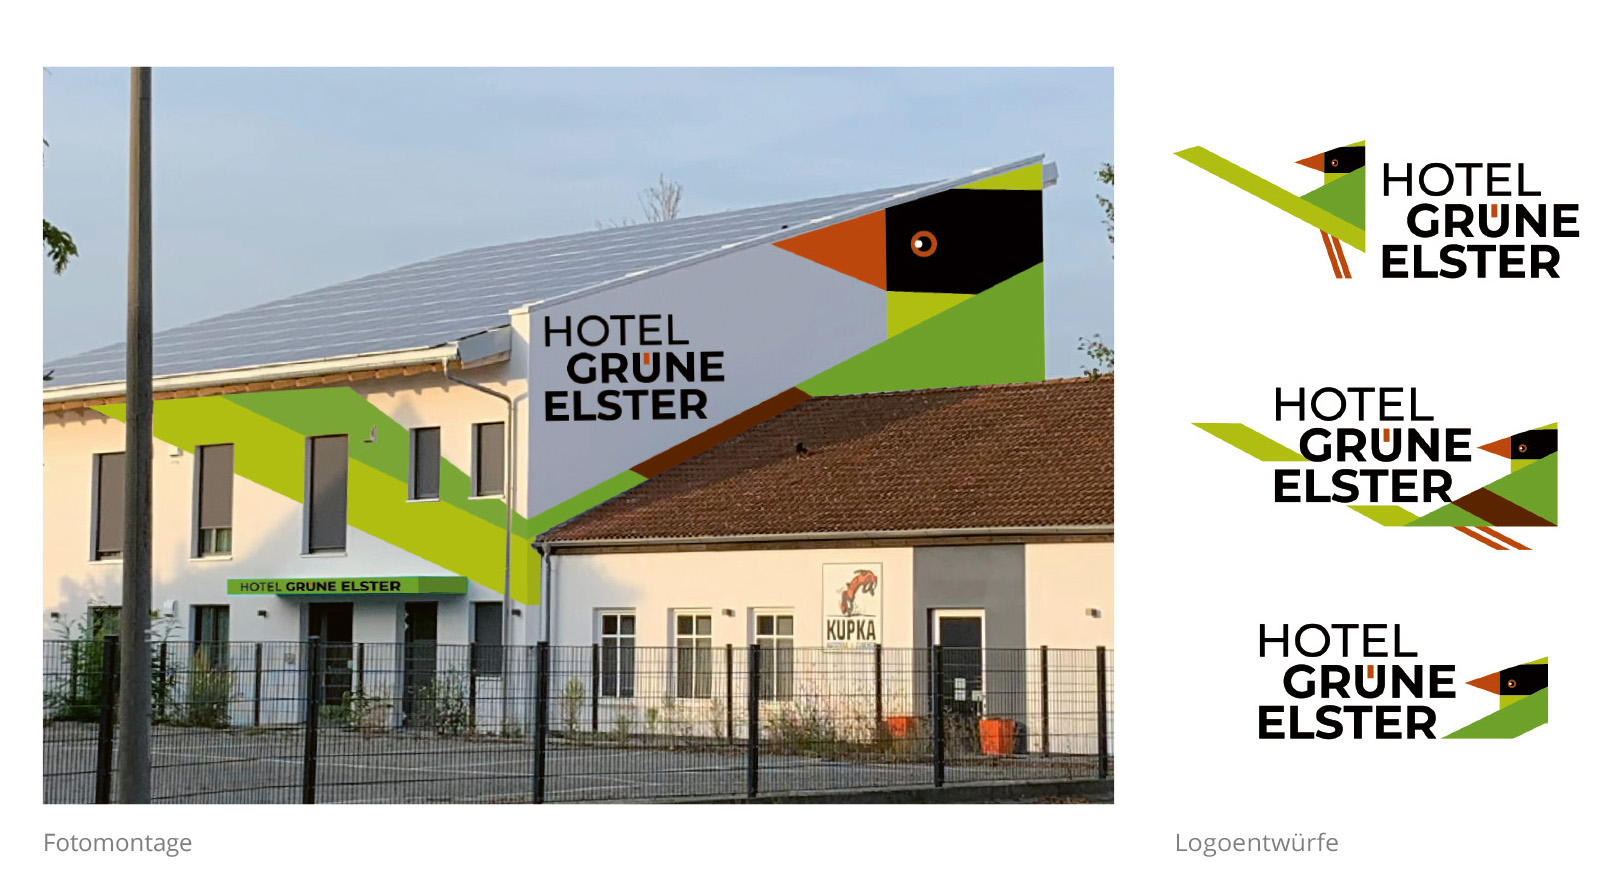 Fassade der grünen Elster – Fotomontage und Logoentwürfe